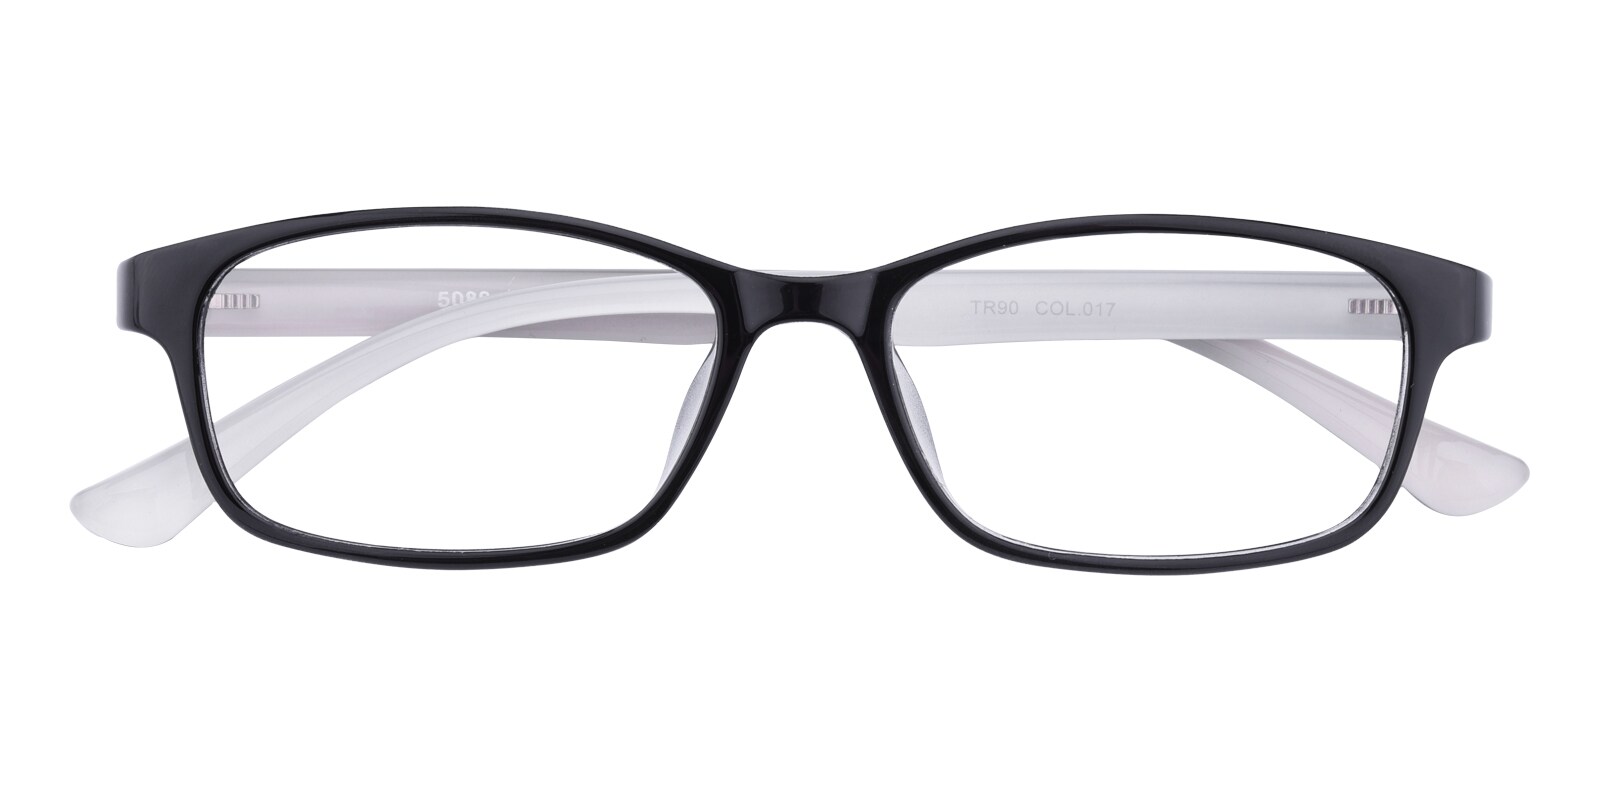 Oval Eyeglasses, Full Frame Black/Crystal TR90 - FP1631